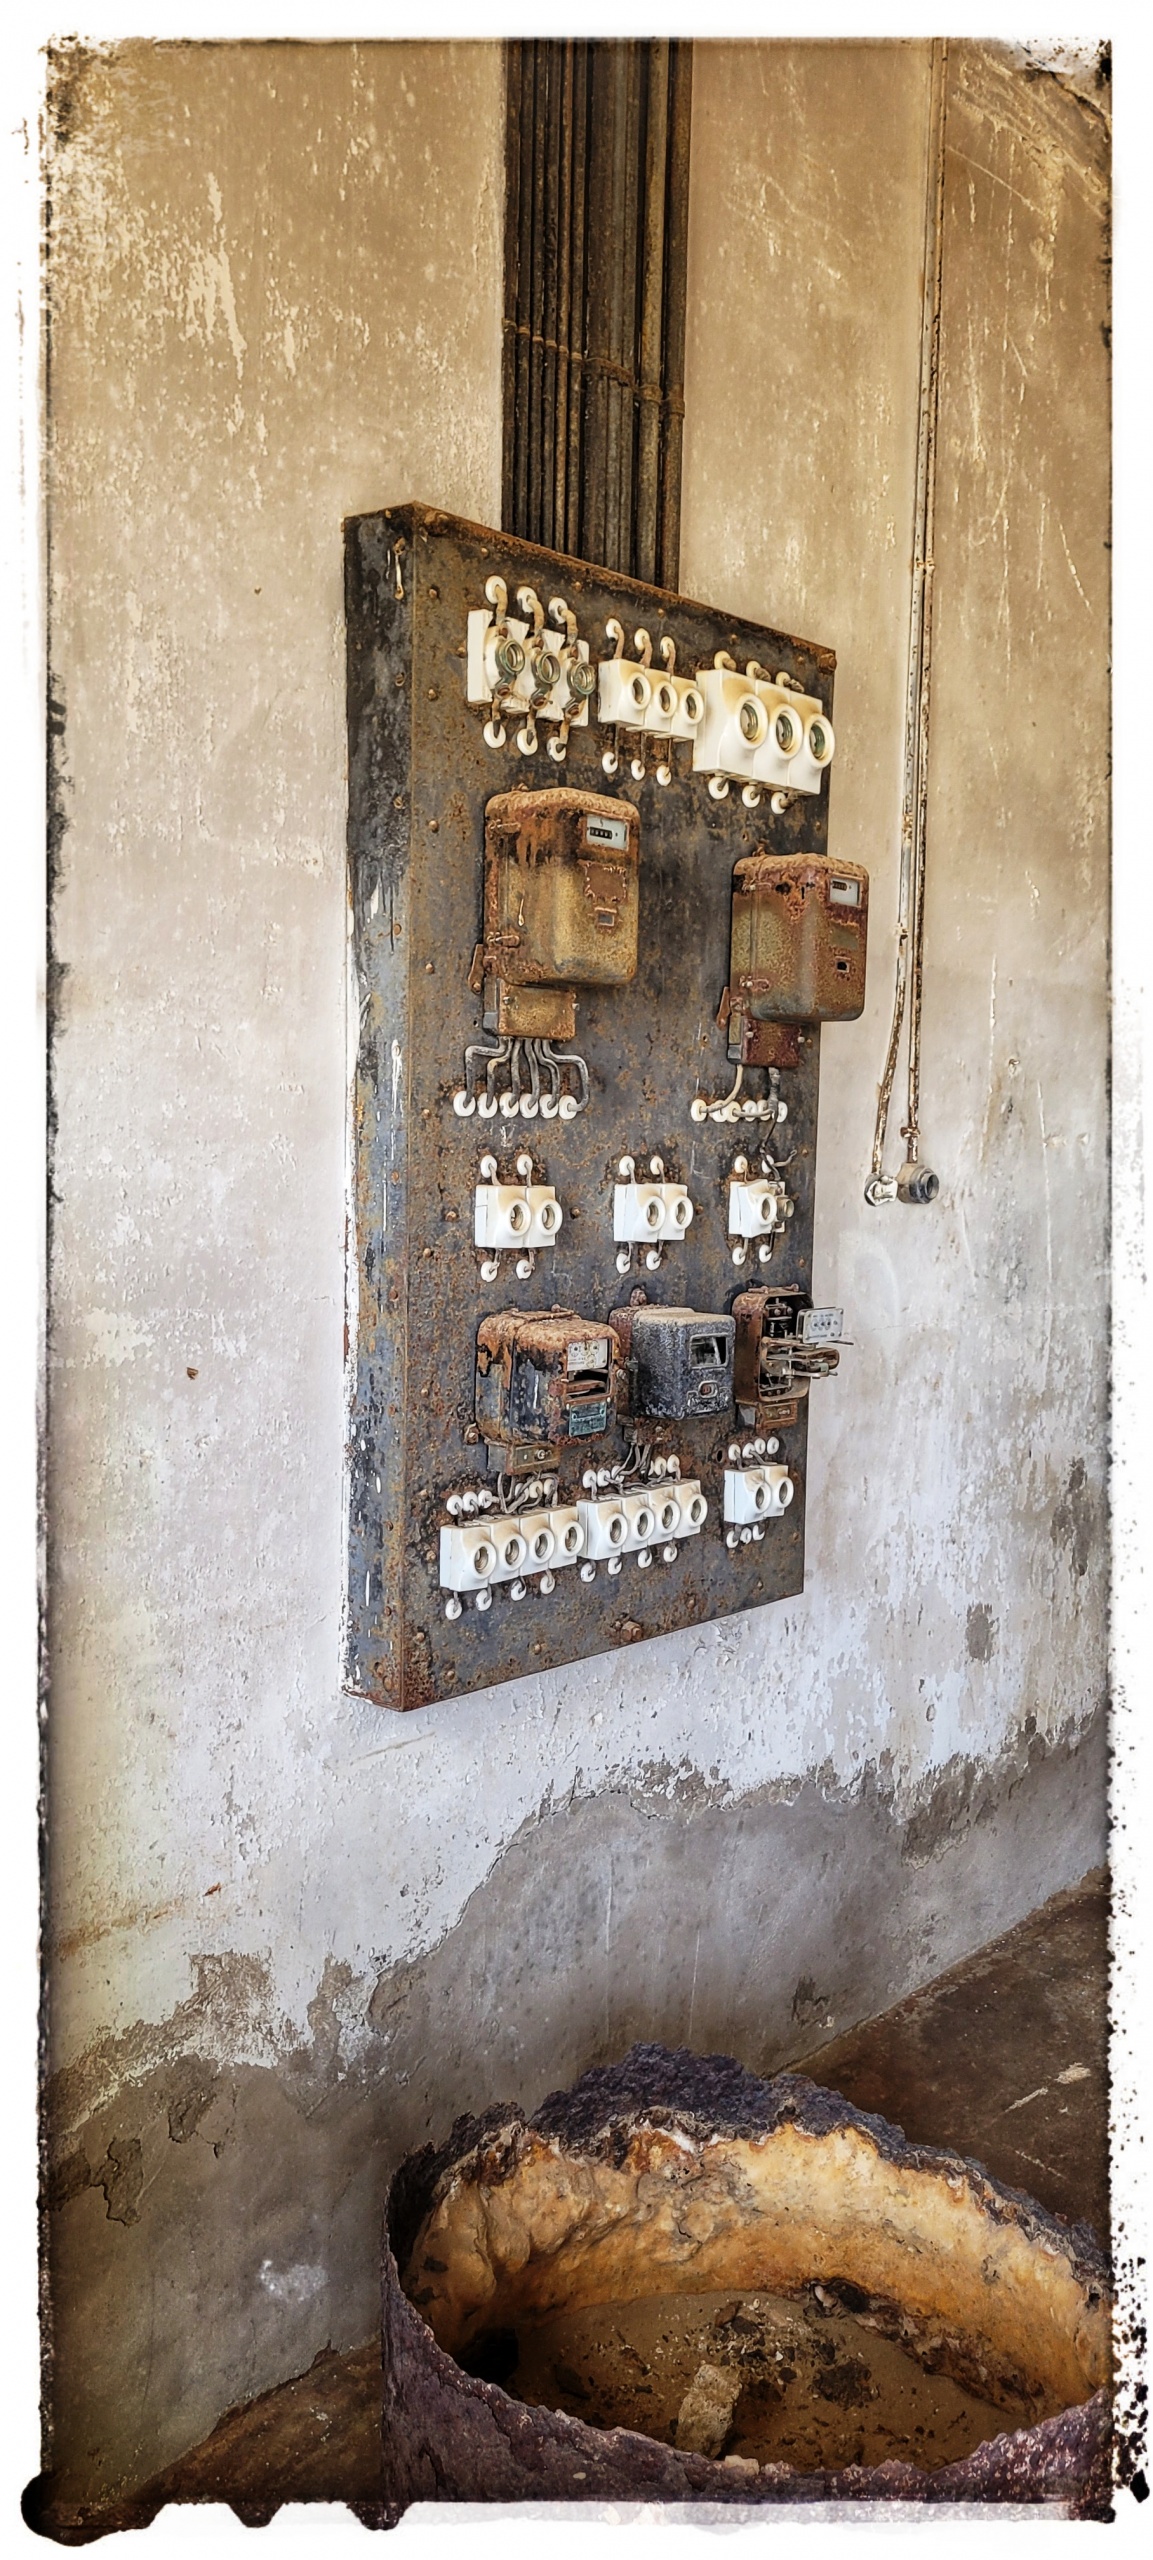 old electrical switch gear at Kolmanskop